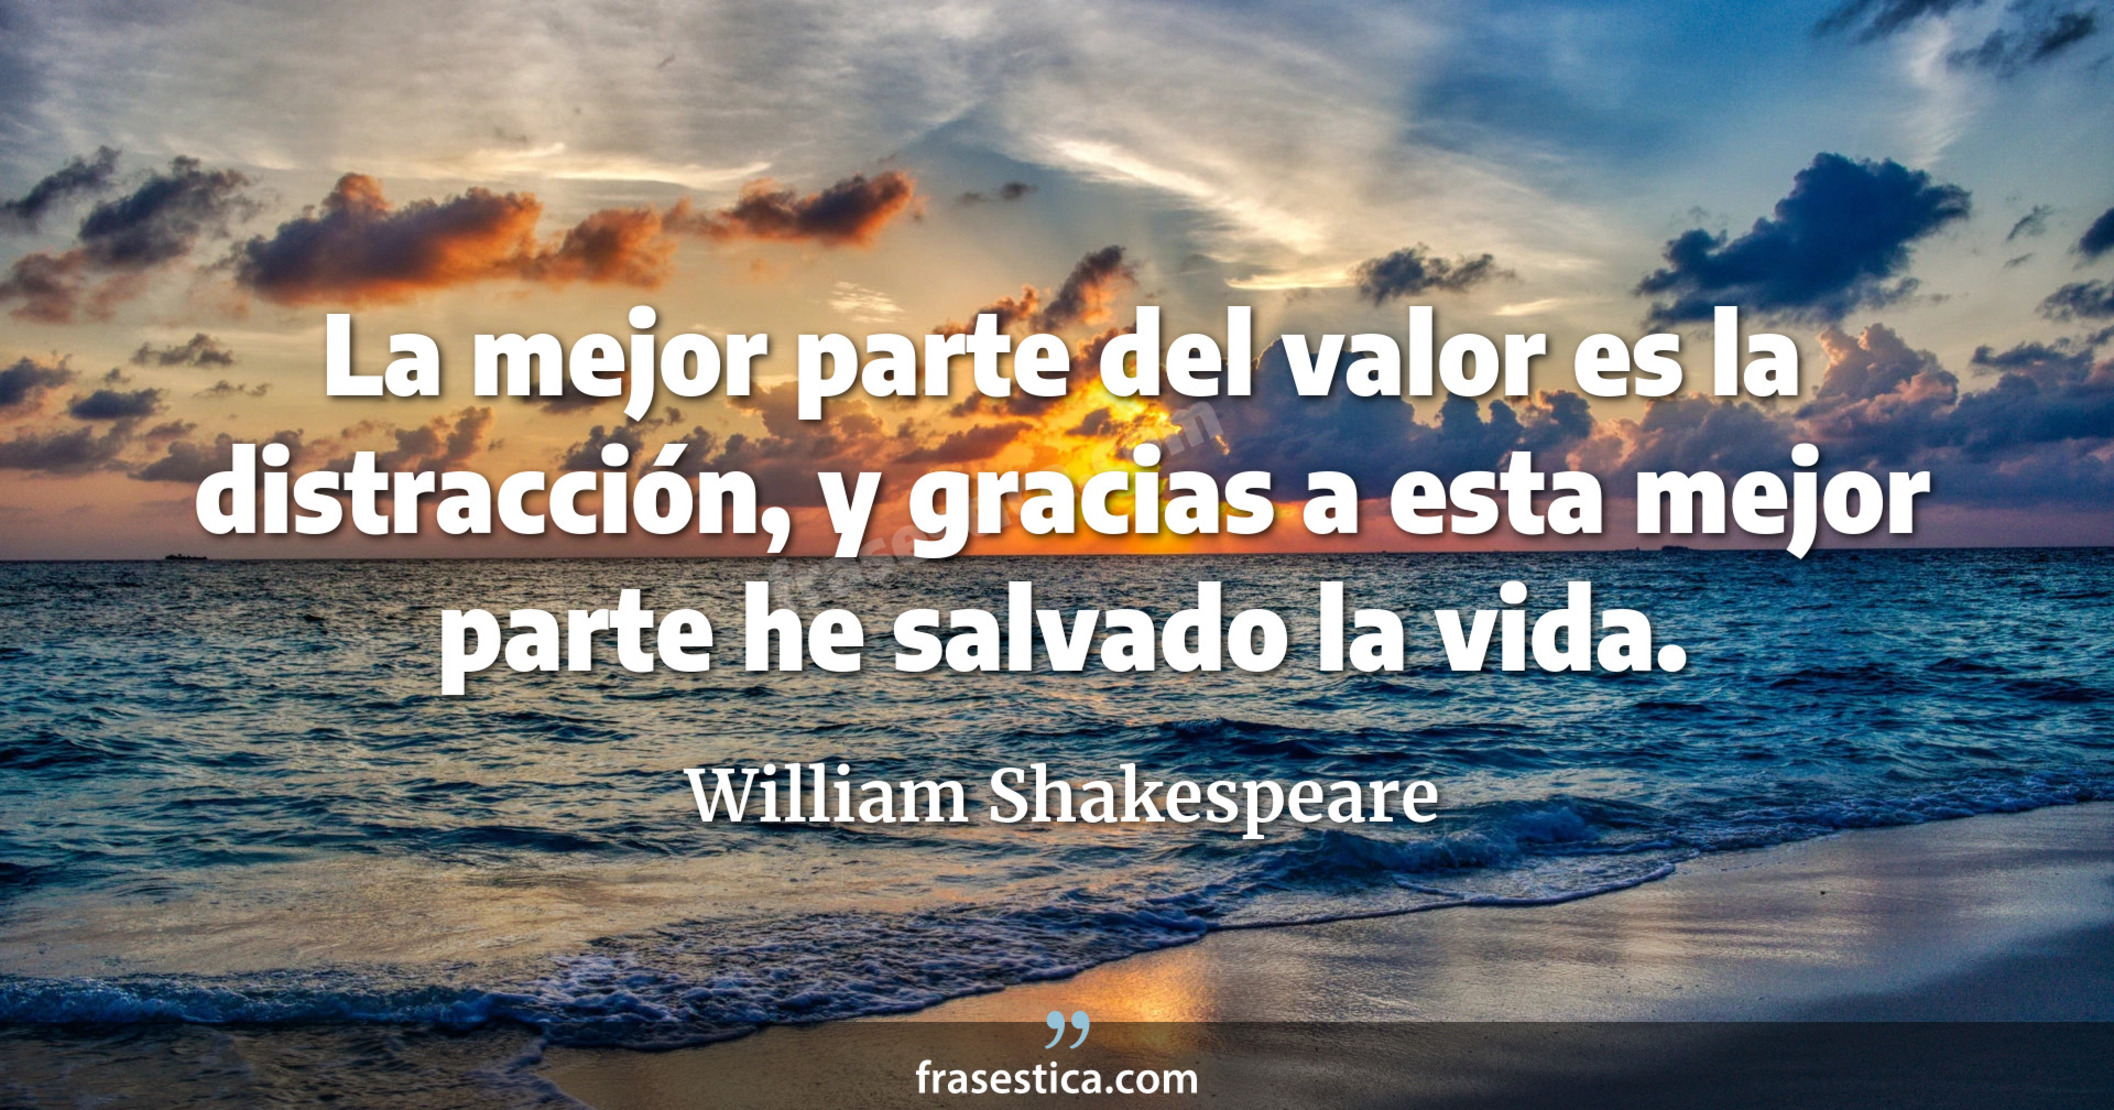 La mejor parte del valor es la distracción, y gracias a esta mejor parte he salvado la vida. - William Shakespeare